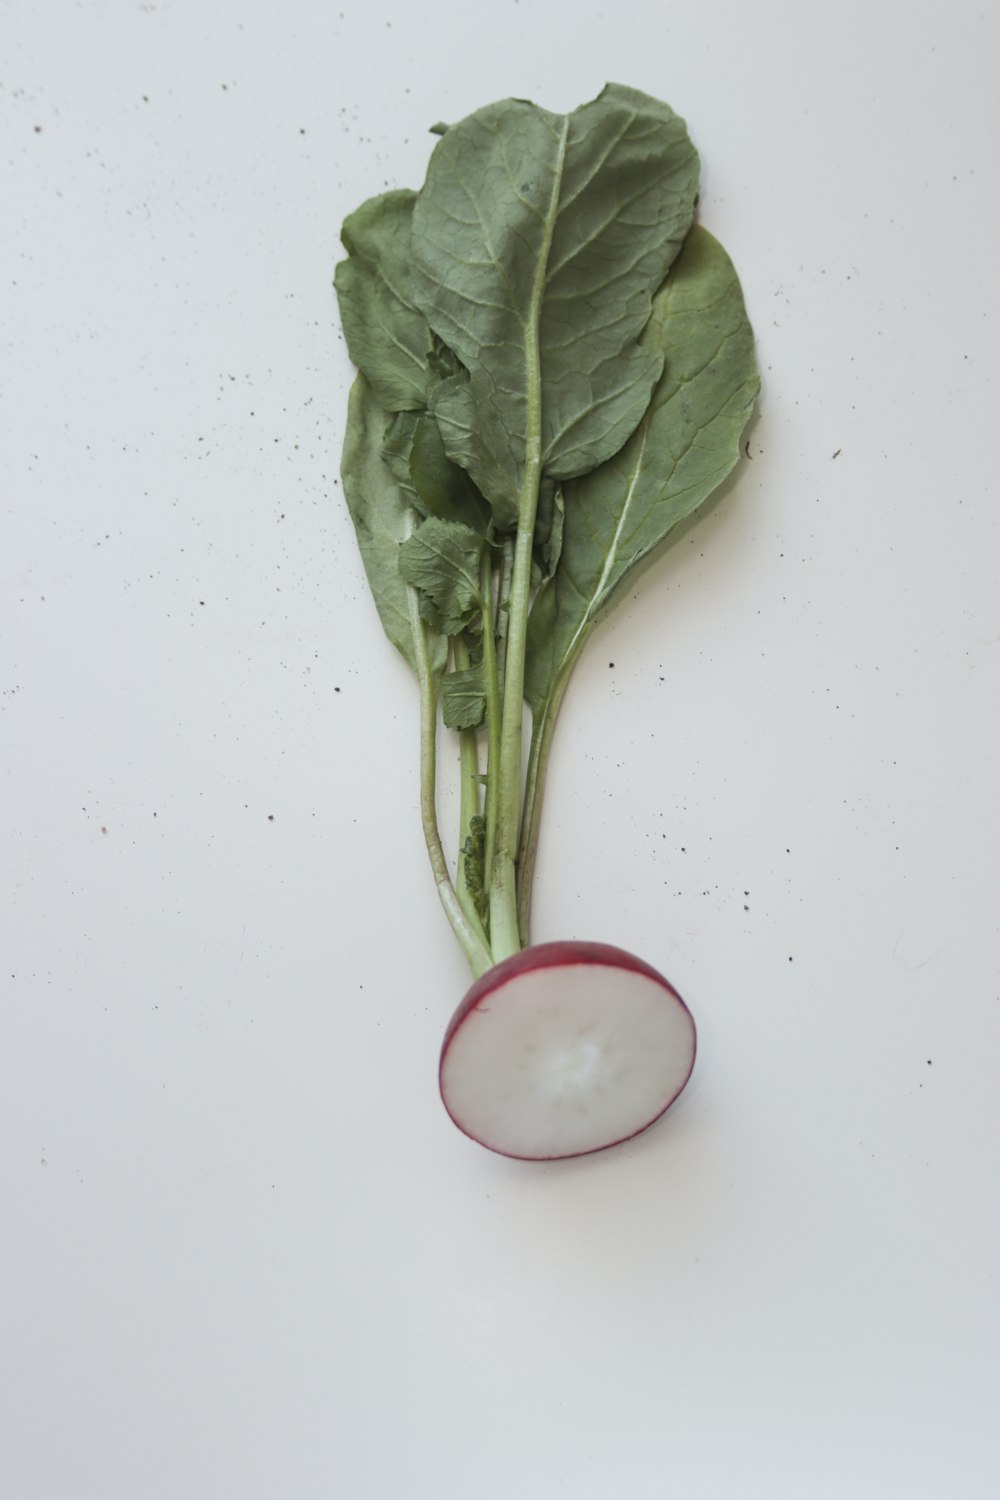 légume vert sur table blanche